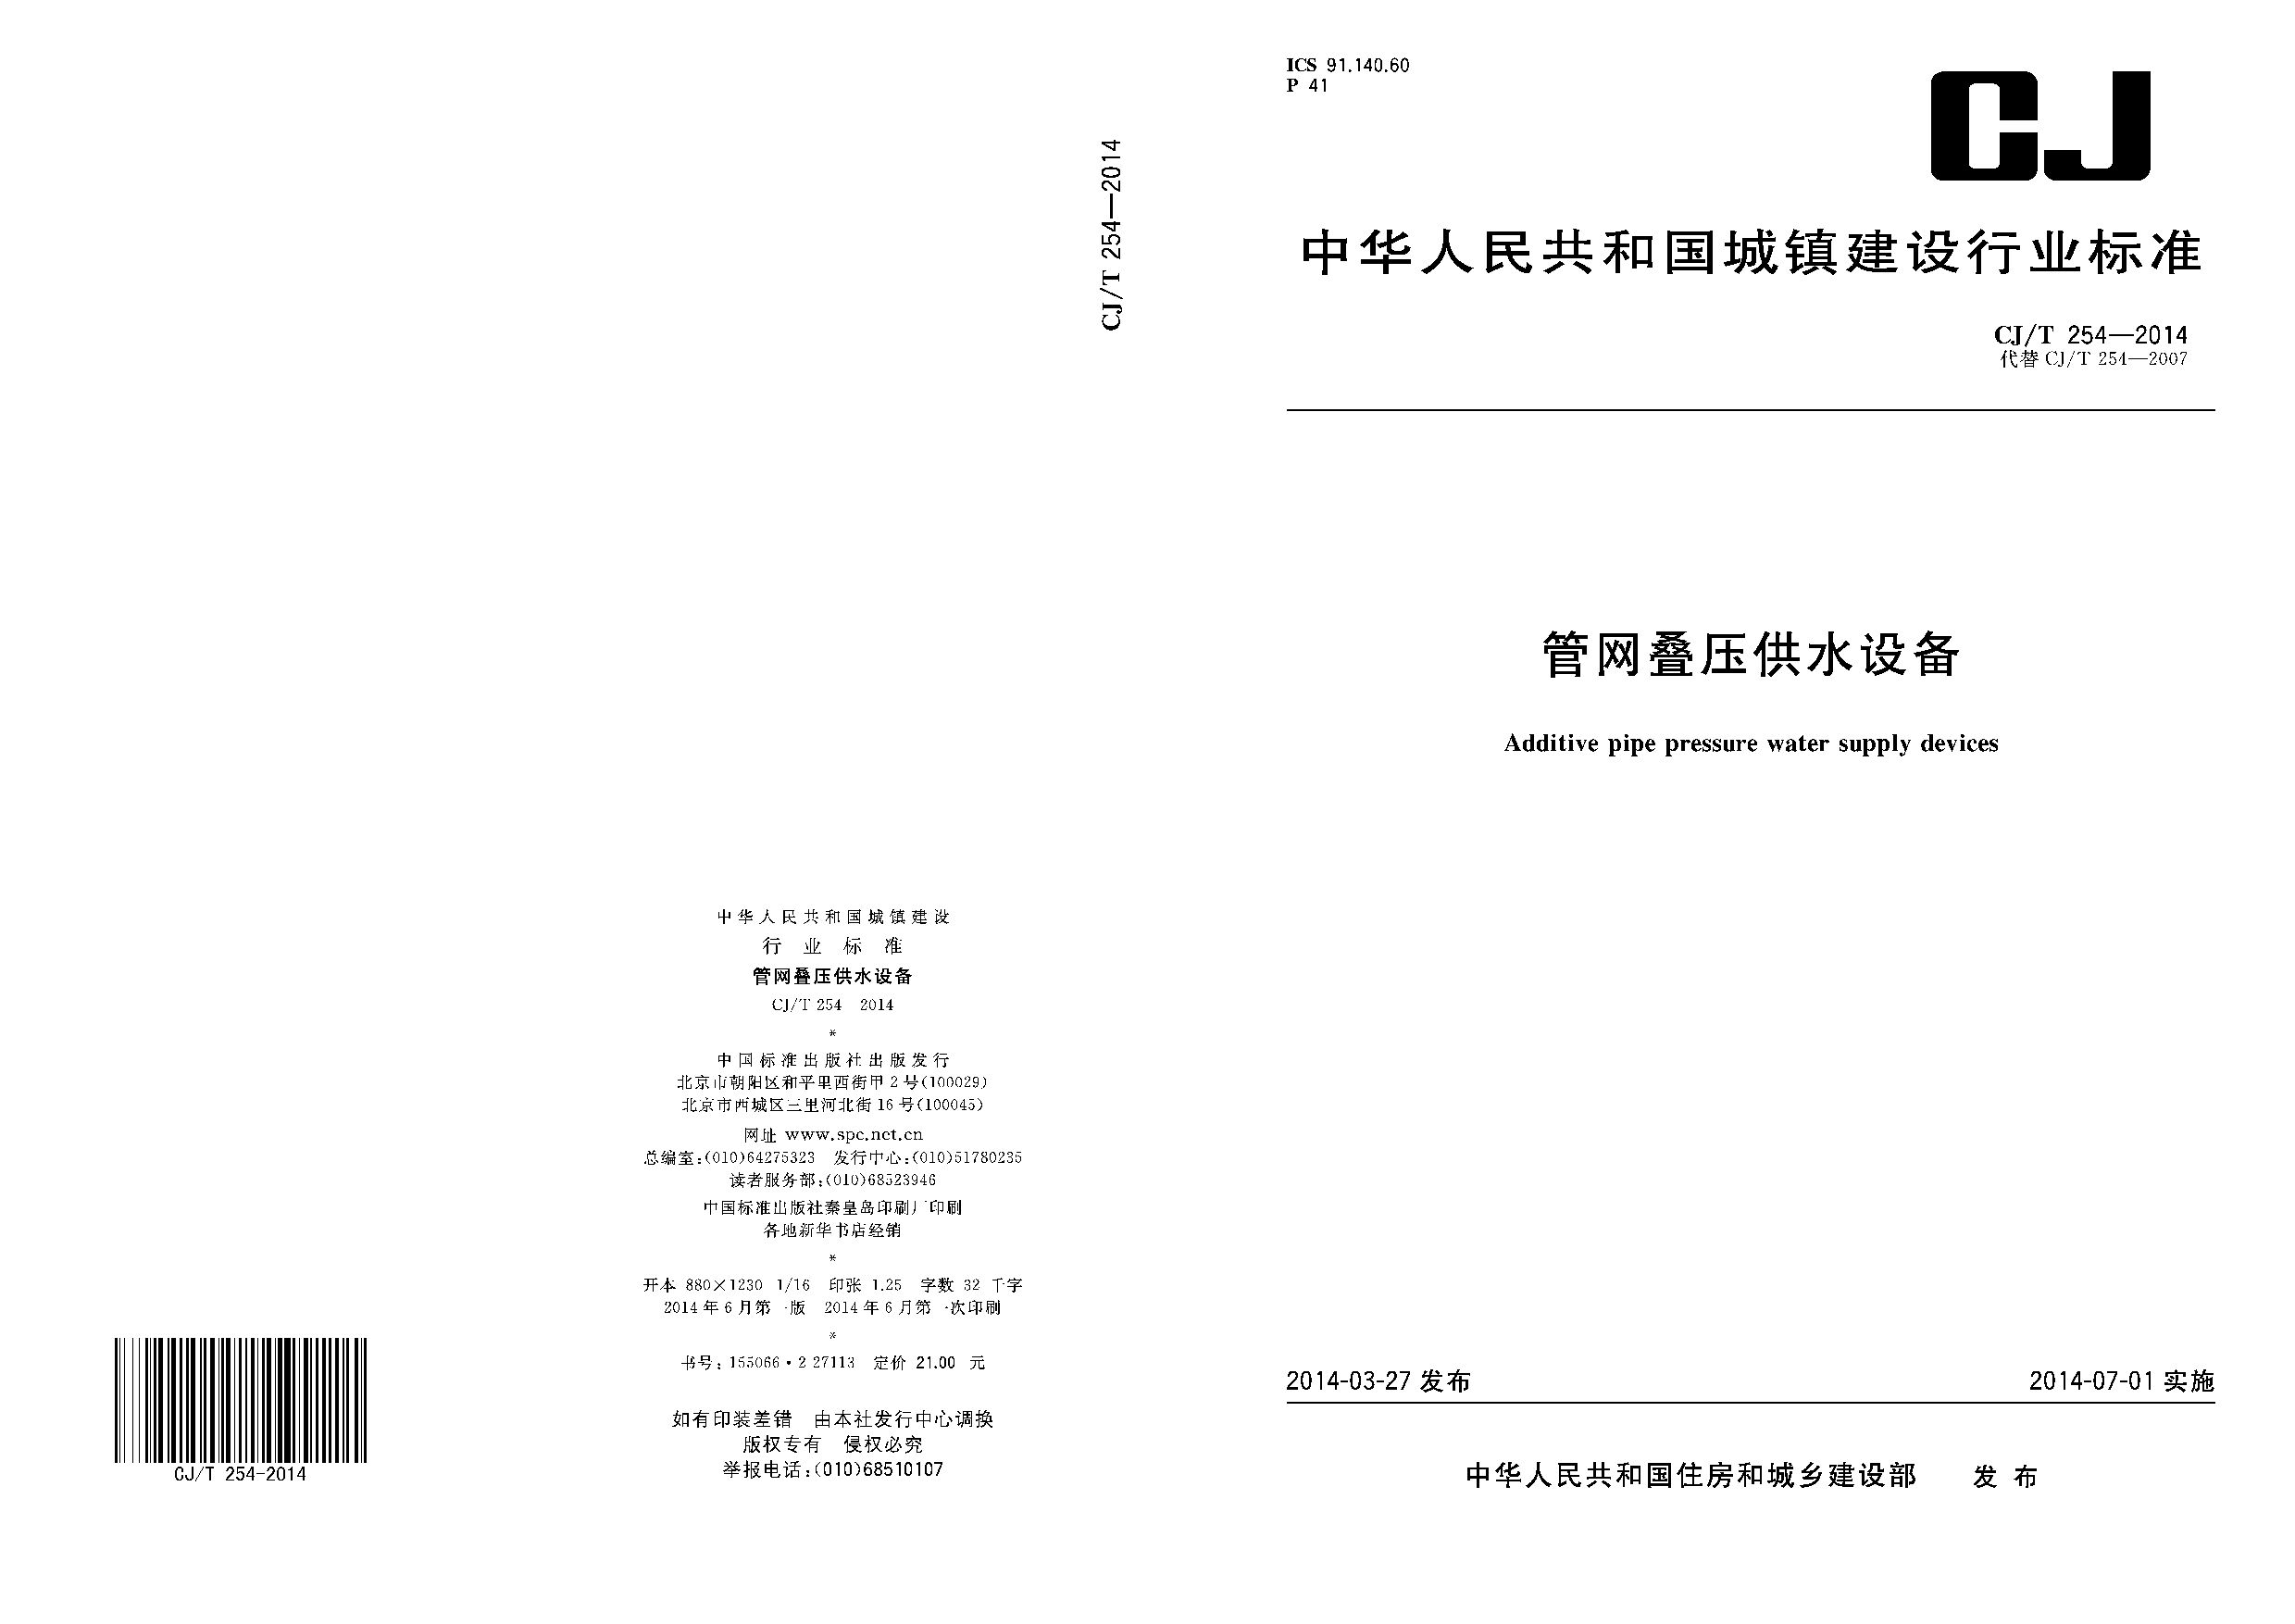 CJ/T 254-2014封面图